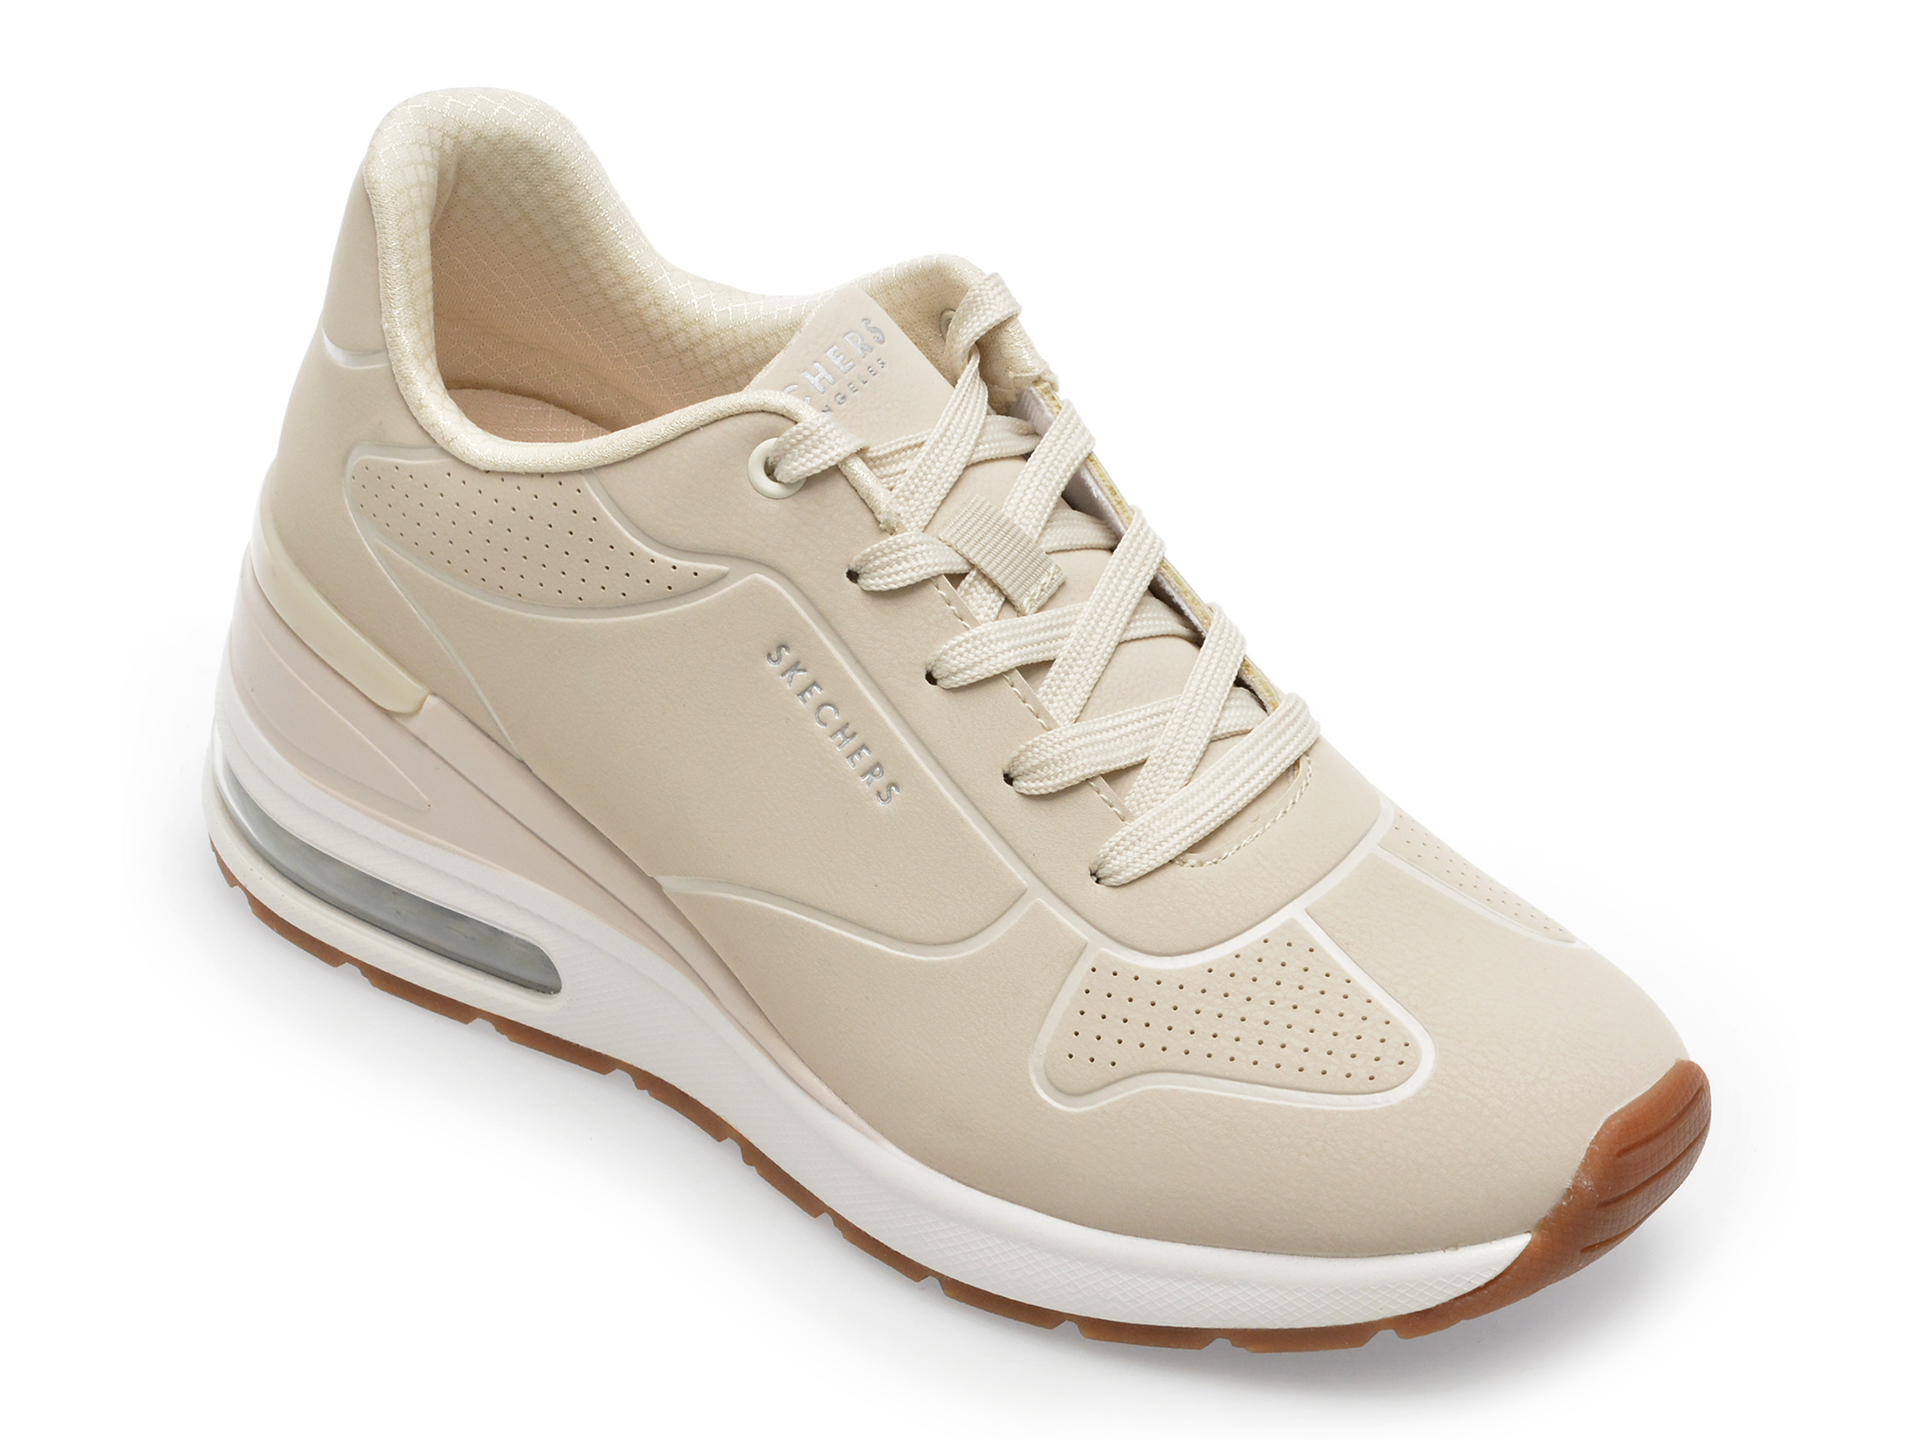 Pantofi sport SKECHERS albi, MILLION AIR, din piele ecologica